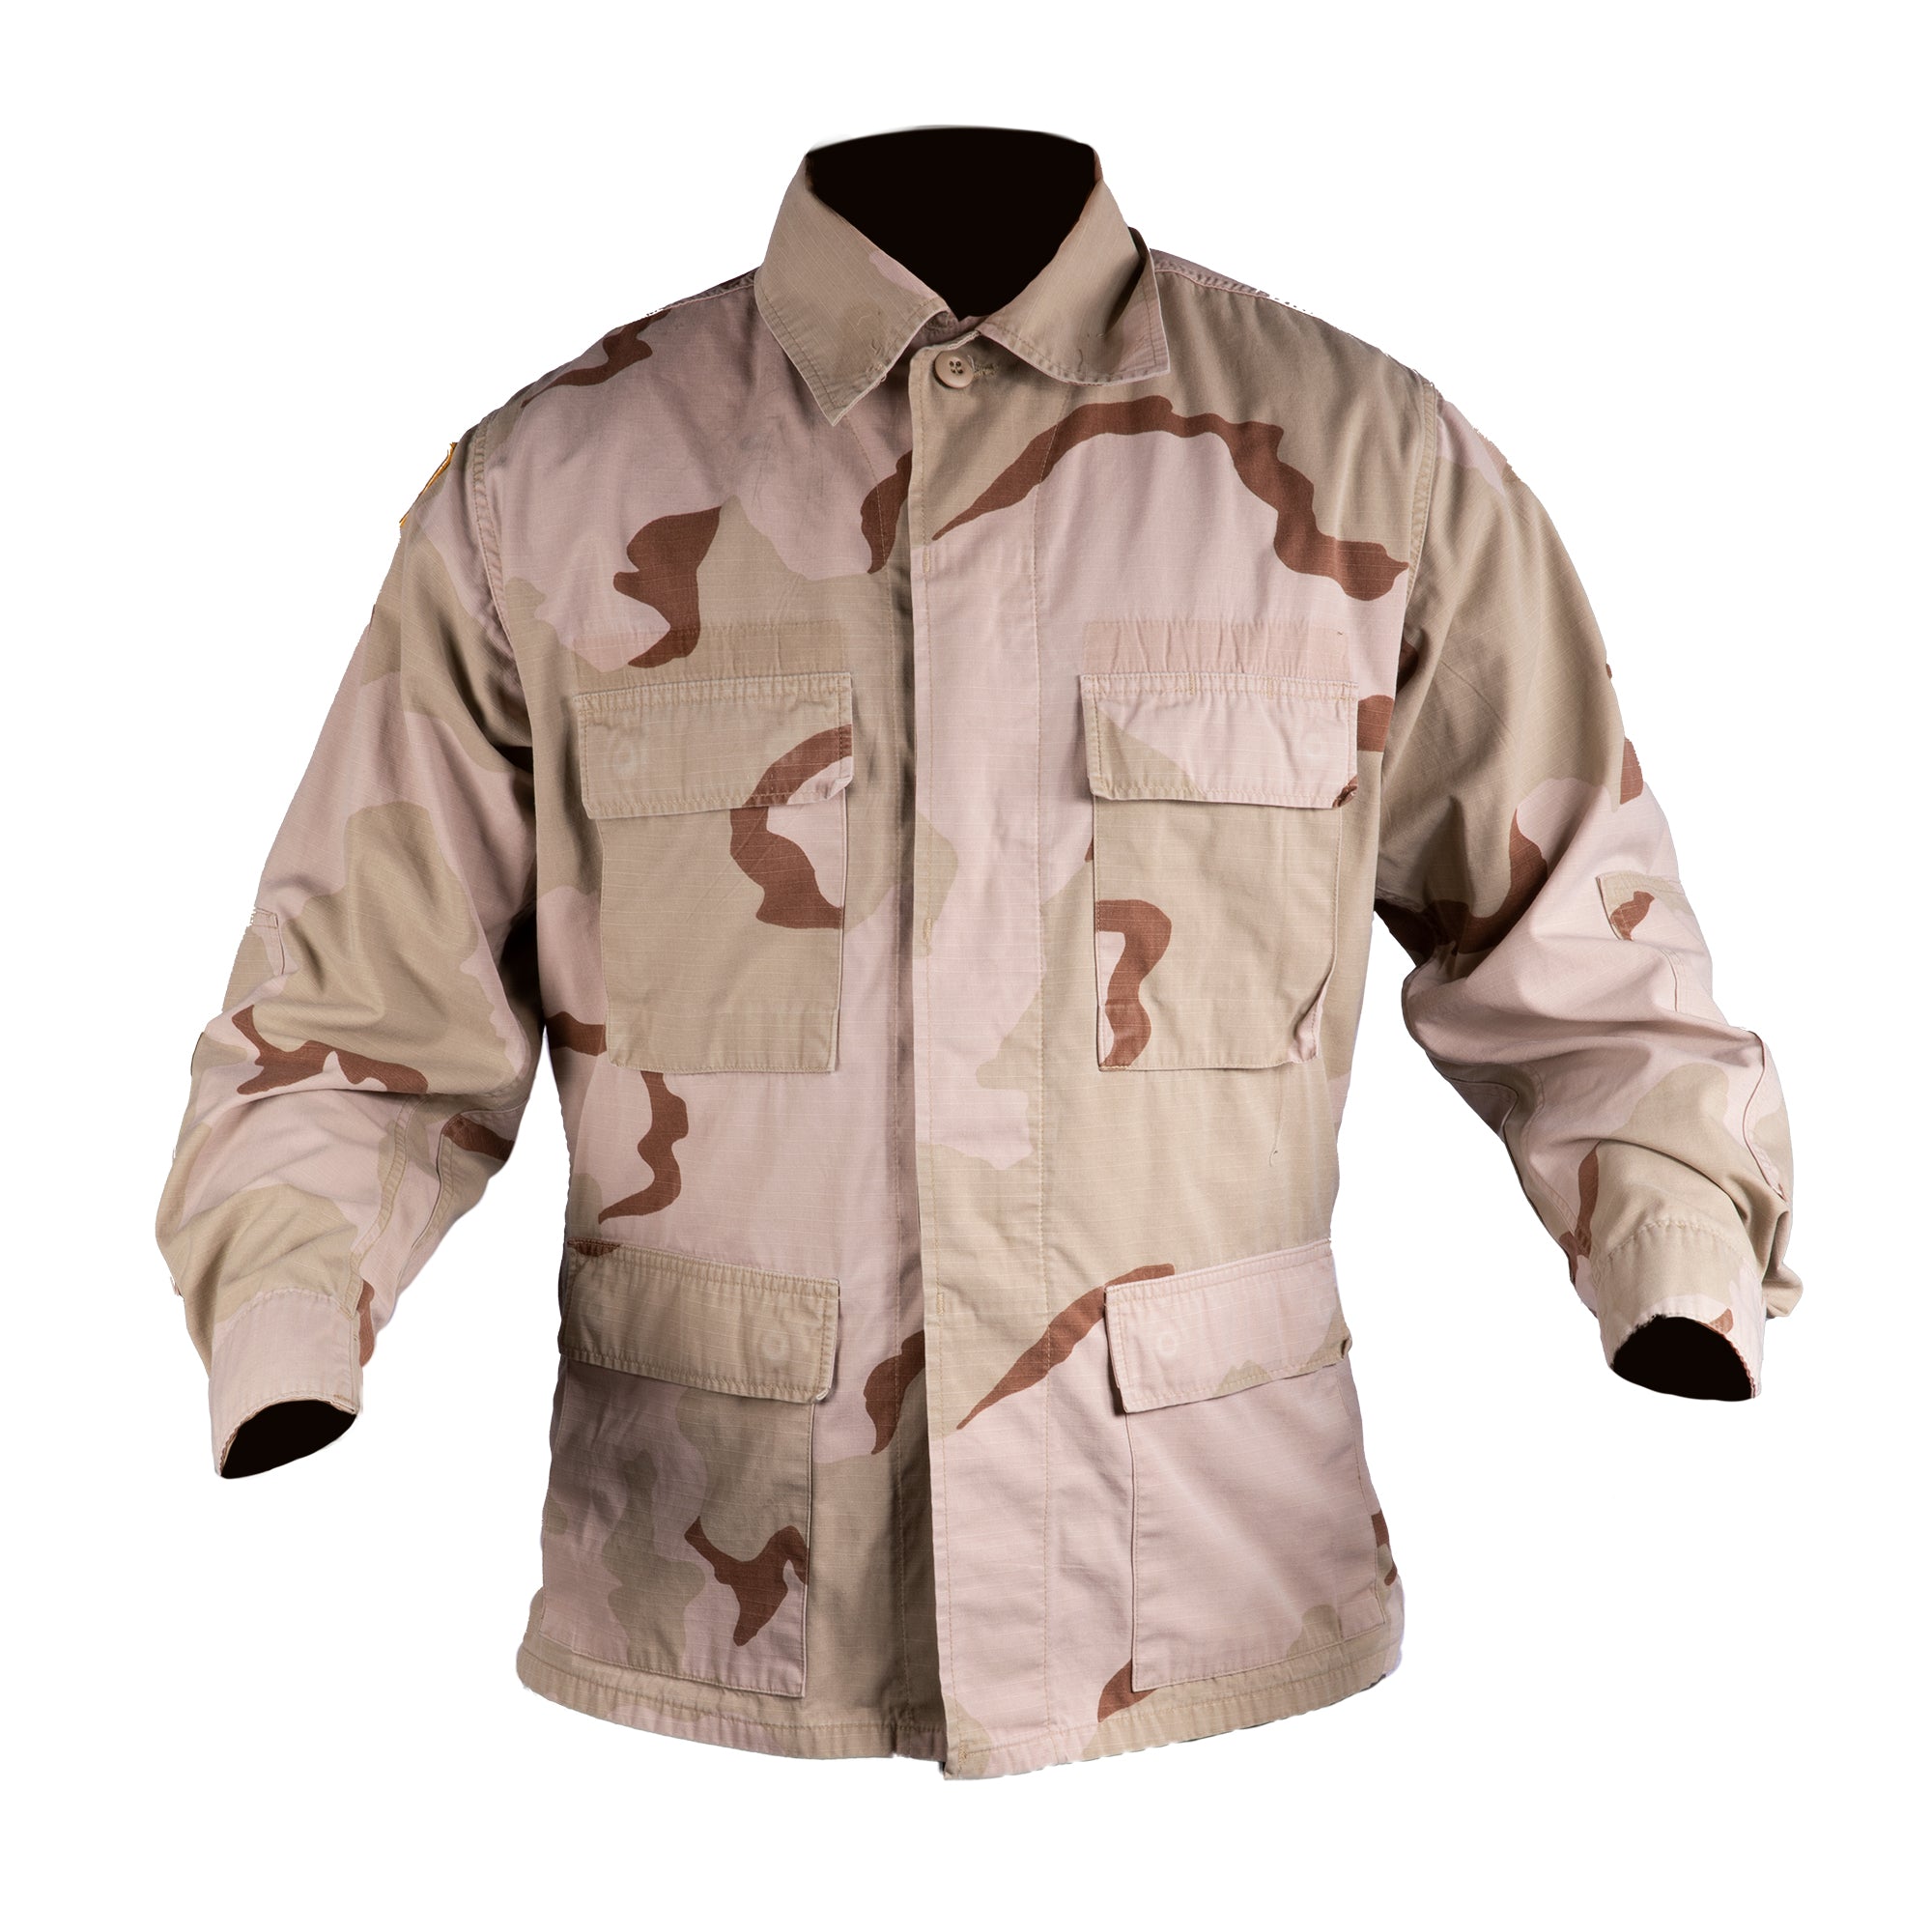 Military DCU Tri-Color Desert Camo Blouse Combat Uniform Shirt Jacket